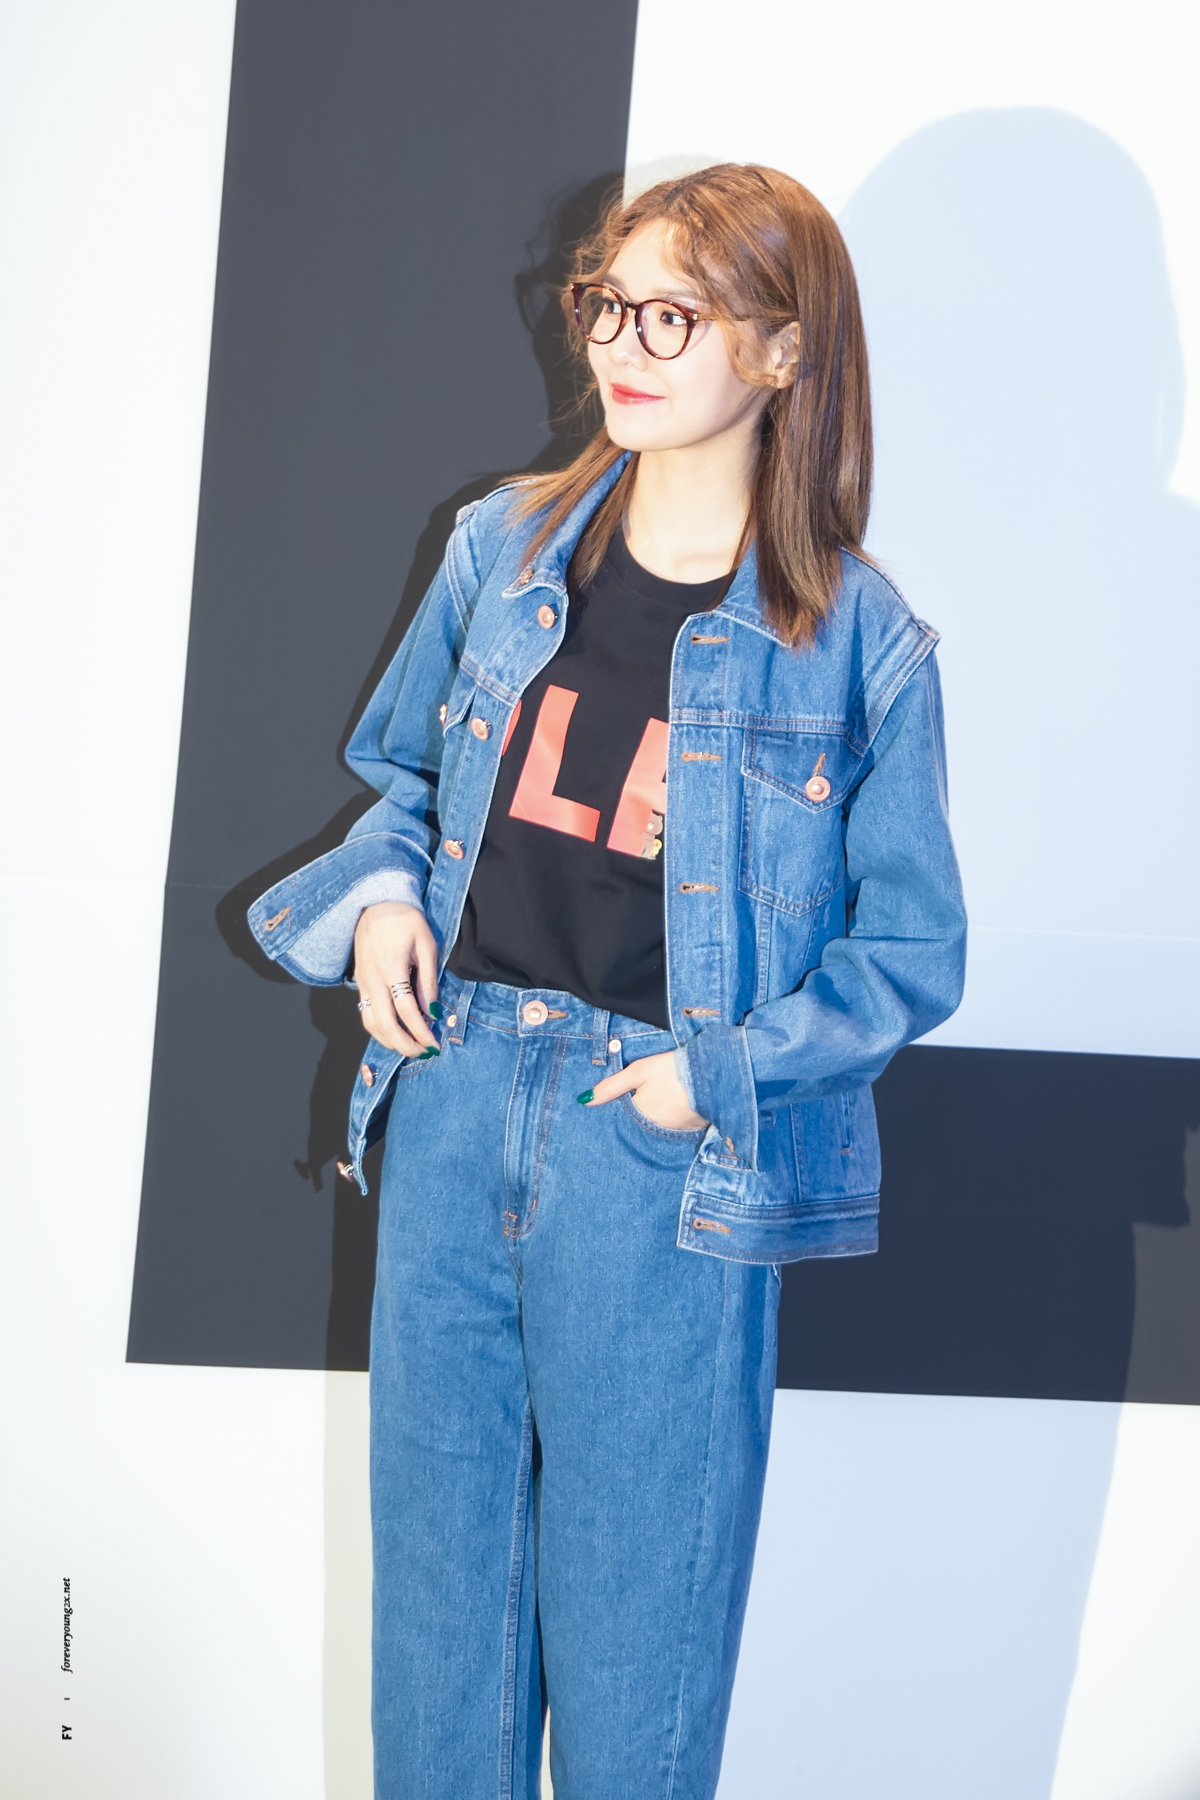 [PIC][27-03-2017]SooYoung tham dự sự kiện ra mắt BST mới của "PUSHBUTTON X LINE FRIENDS" trong khuôn khổ "2017 S/S HERA Seoul Fashion Week" vào tối nay 32869301943_fc1418ee17_o